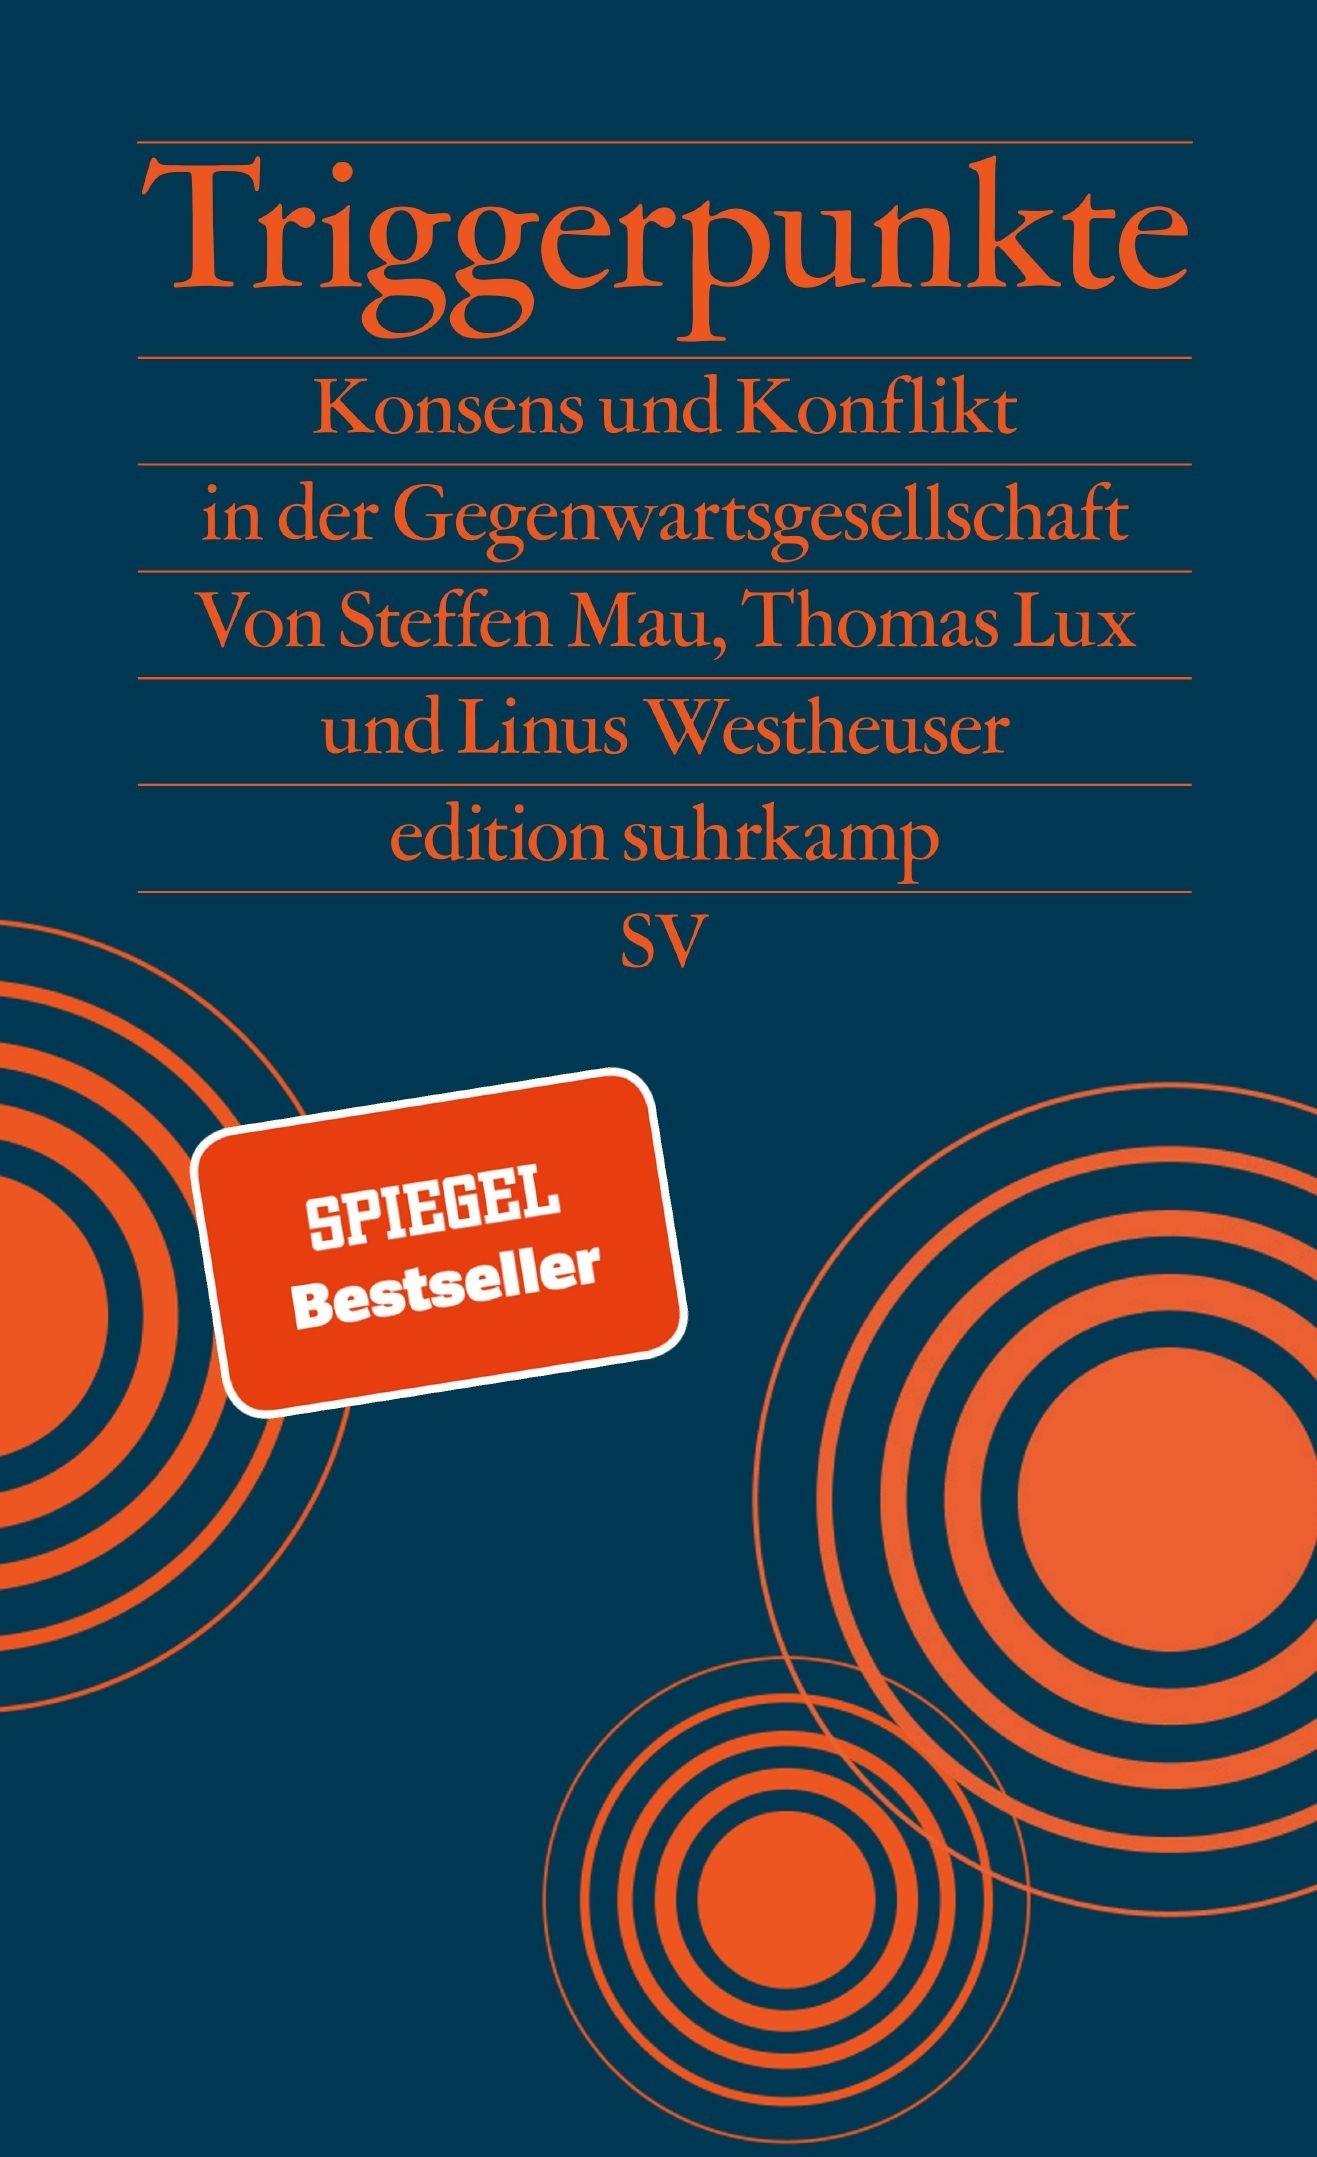 Buchcover: Triggerpunkte von Steffen Mau, Thomas Lux und Linus Westheuser